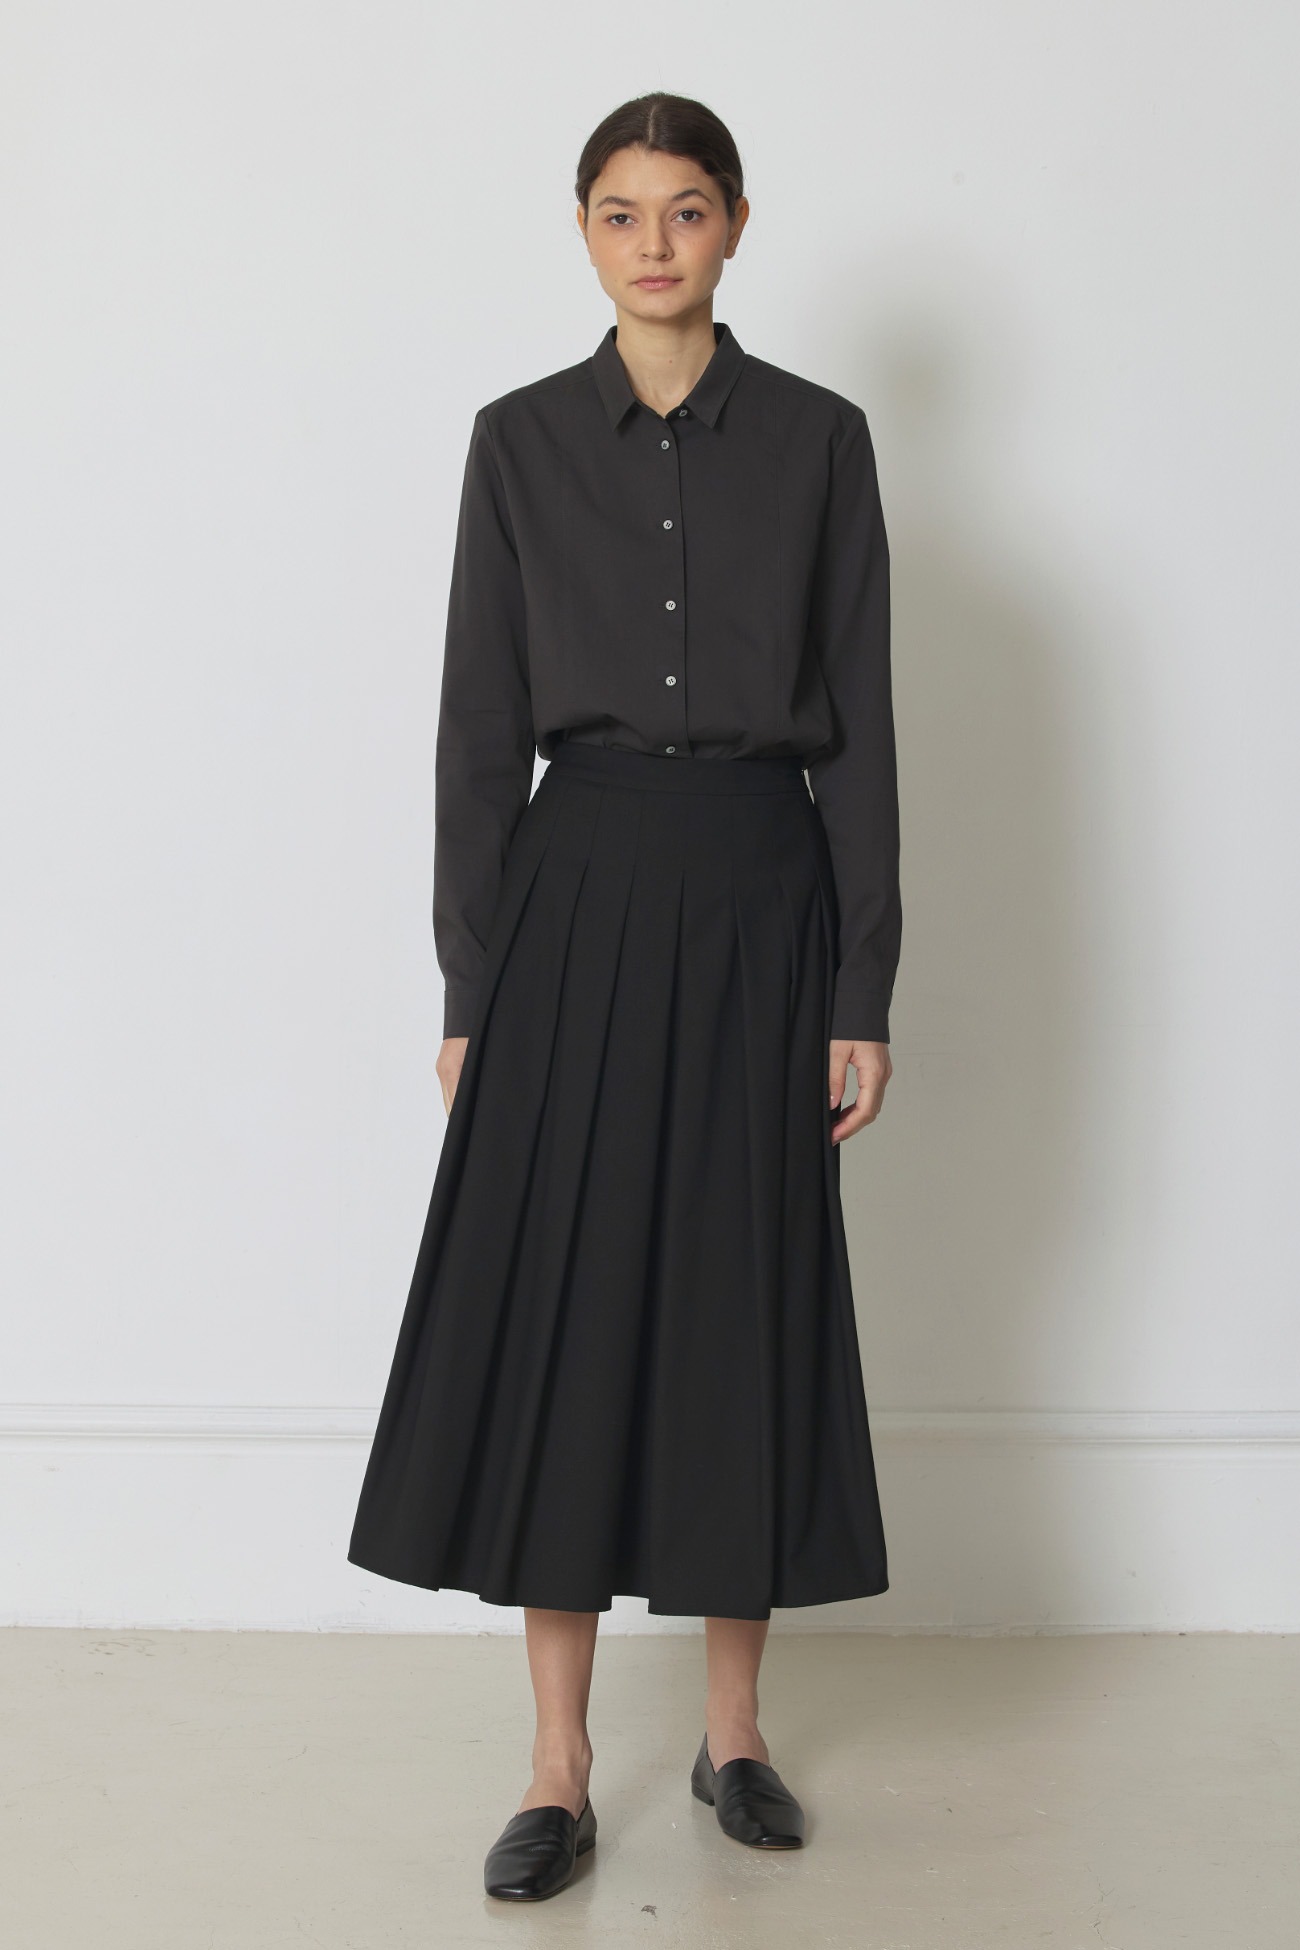 Nouveau classic skirt real black